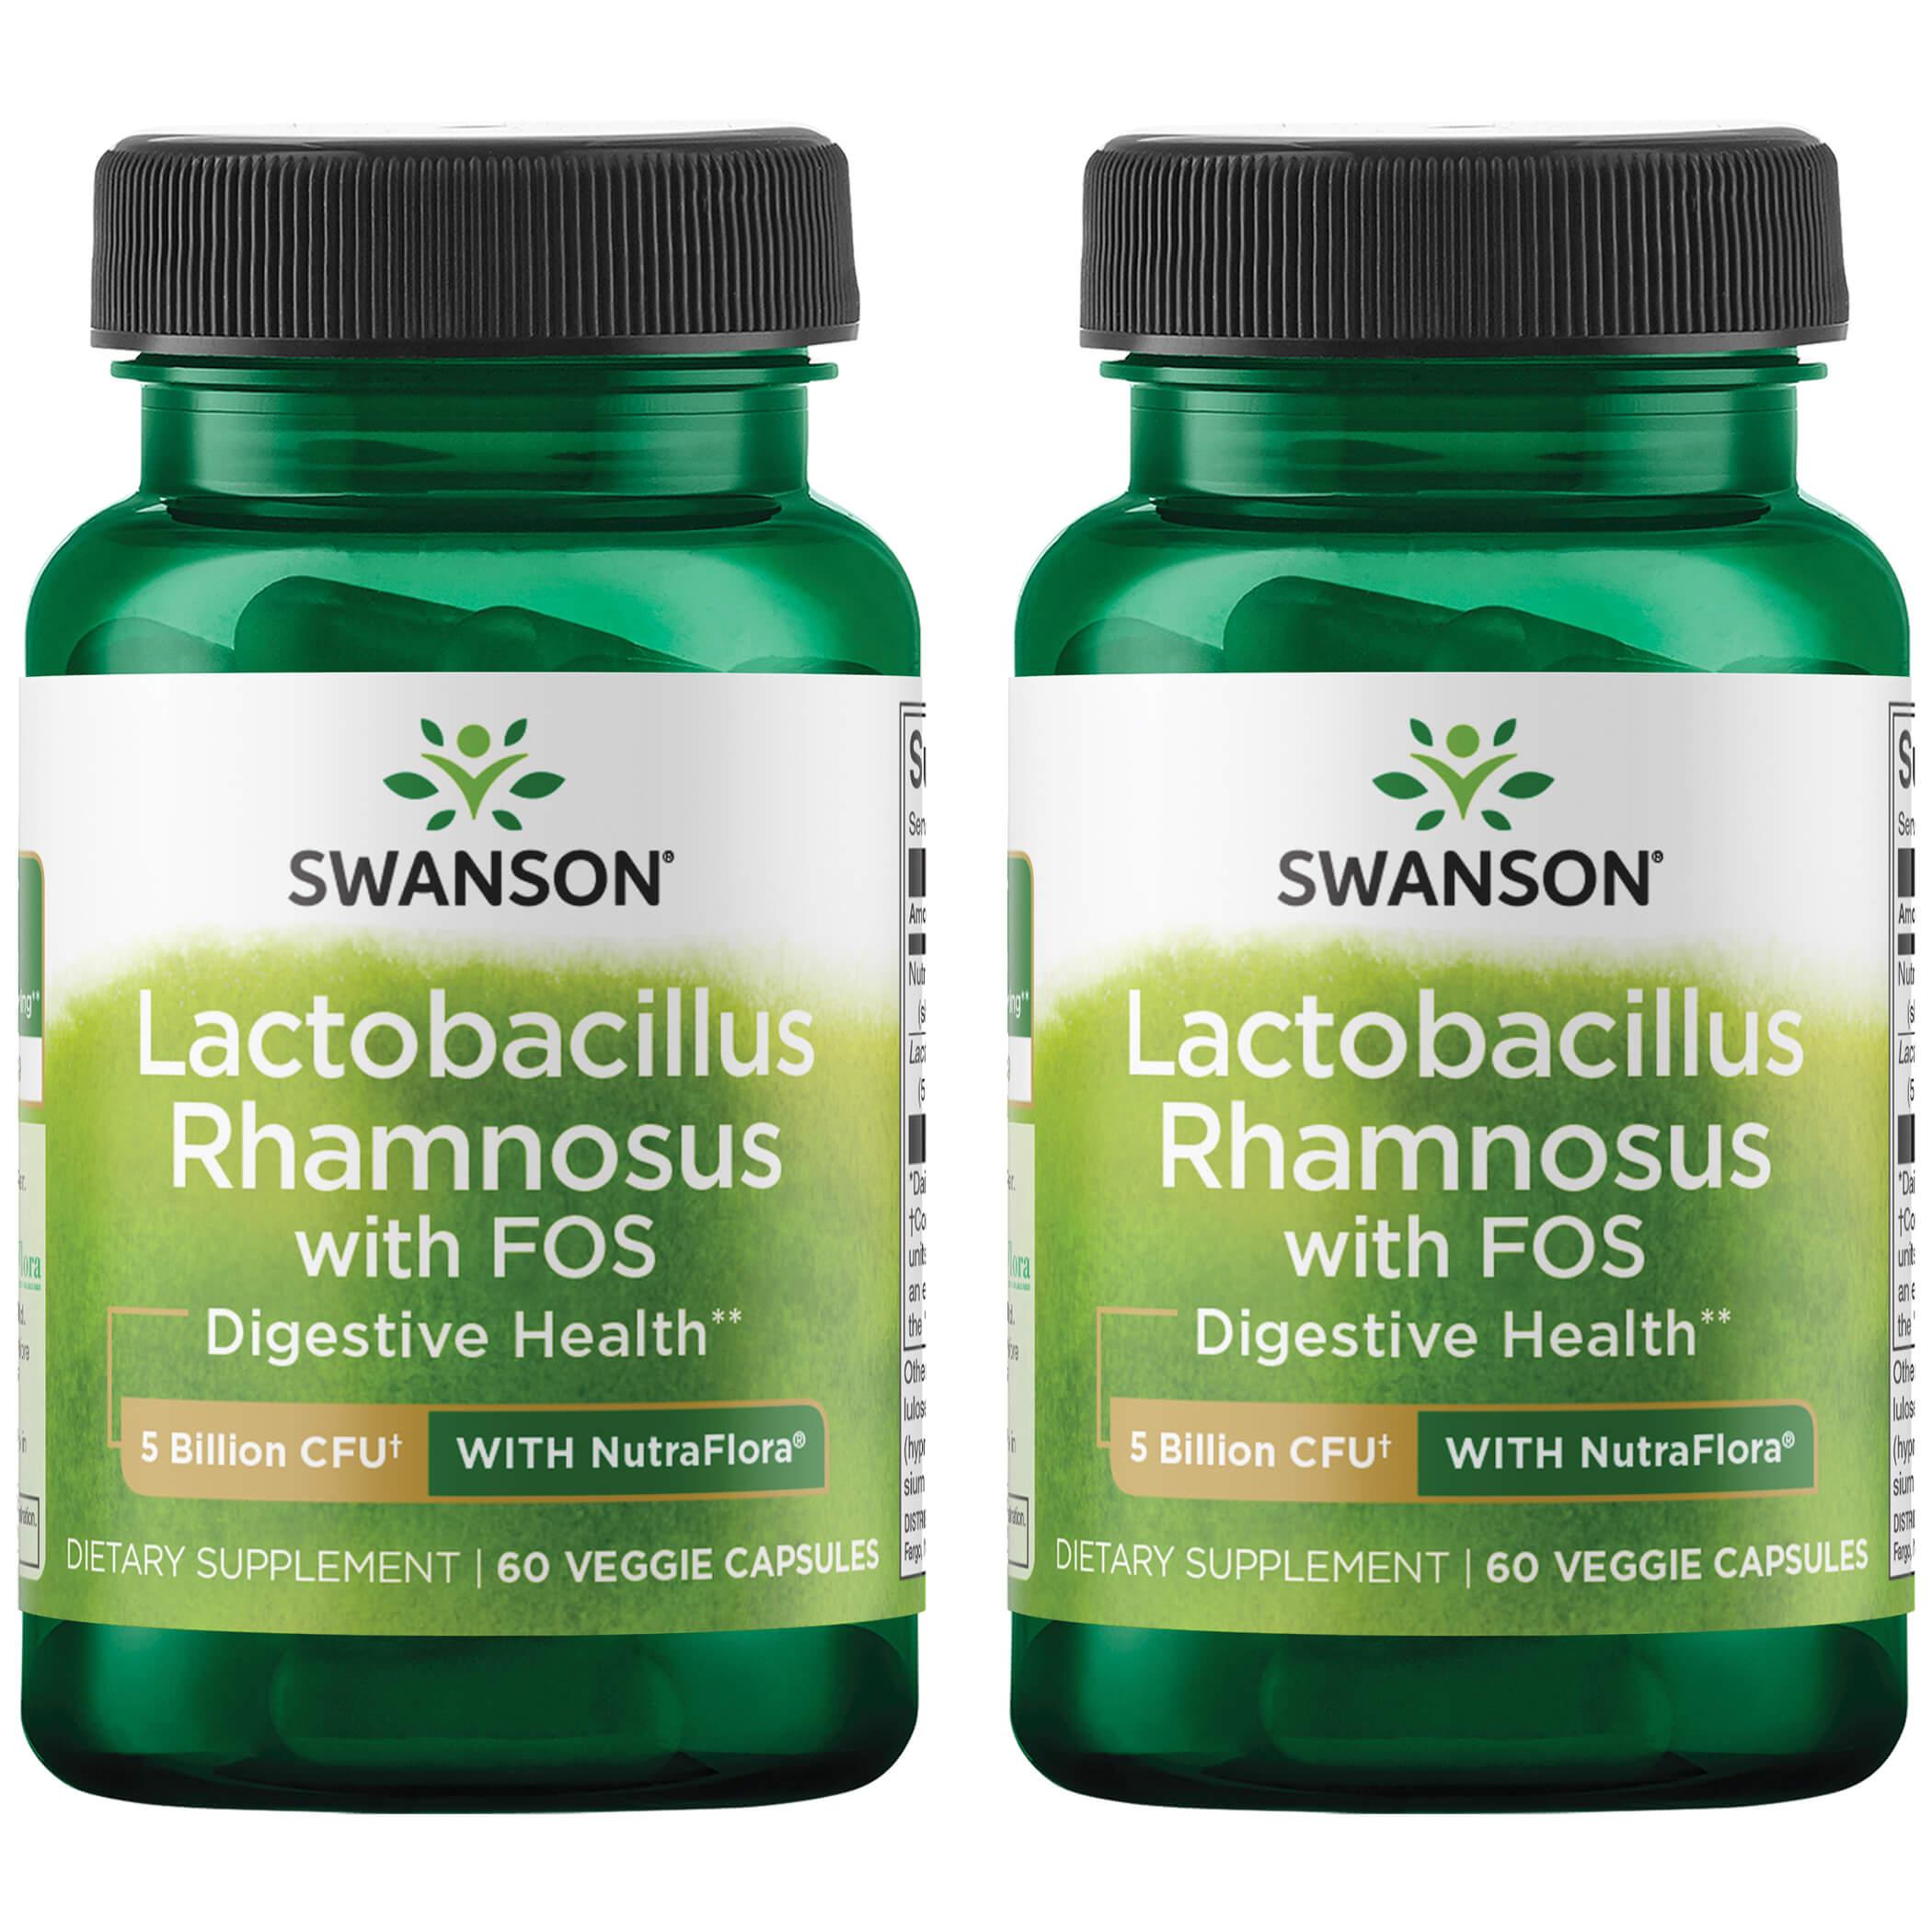 Swanson Probiotics Lactobacillus Rhamnosus with Fos 2 Pack Supplement Vitamin 5 Billion CFU 60 Qualicaps